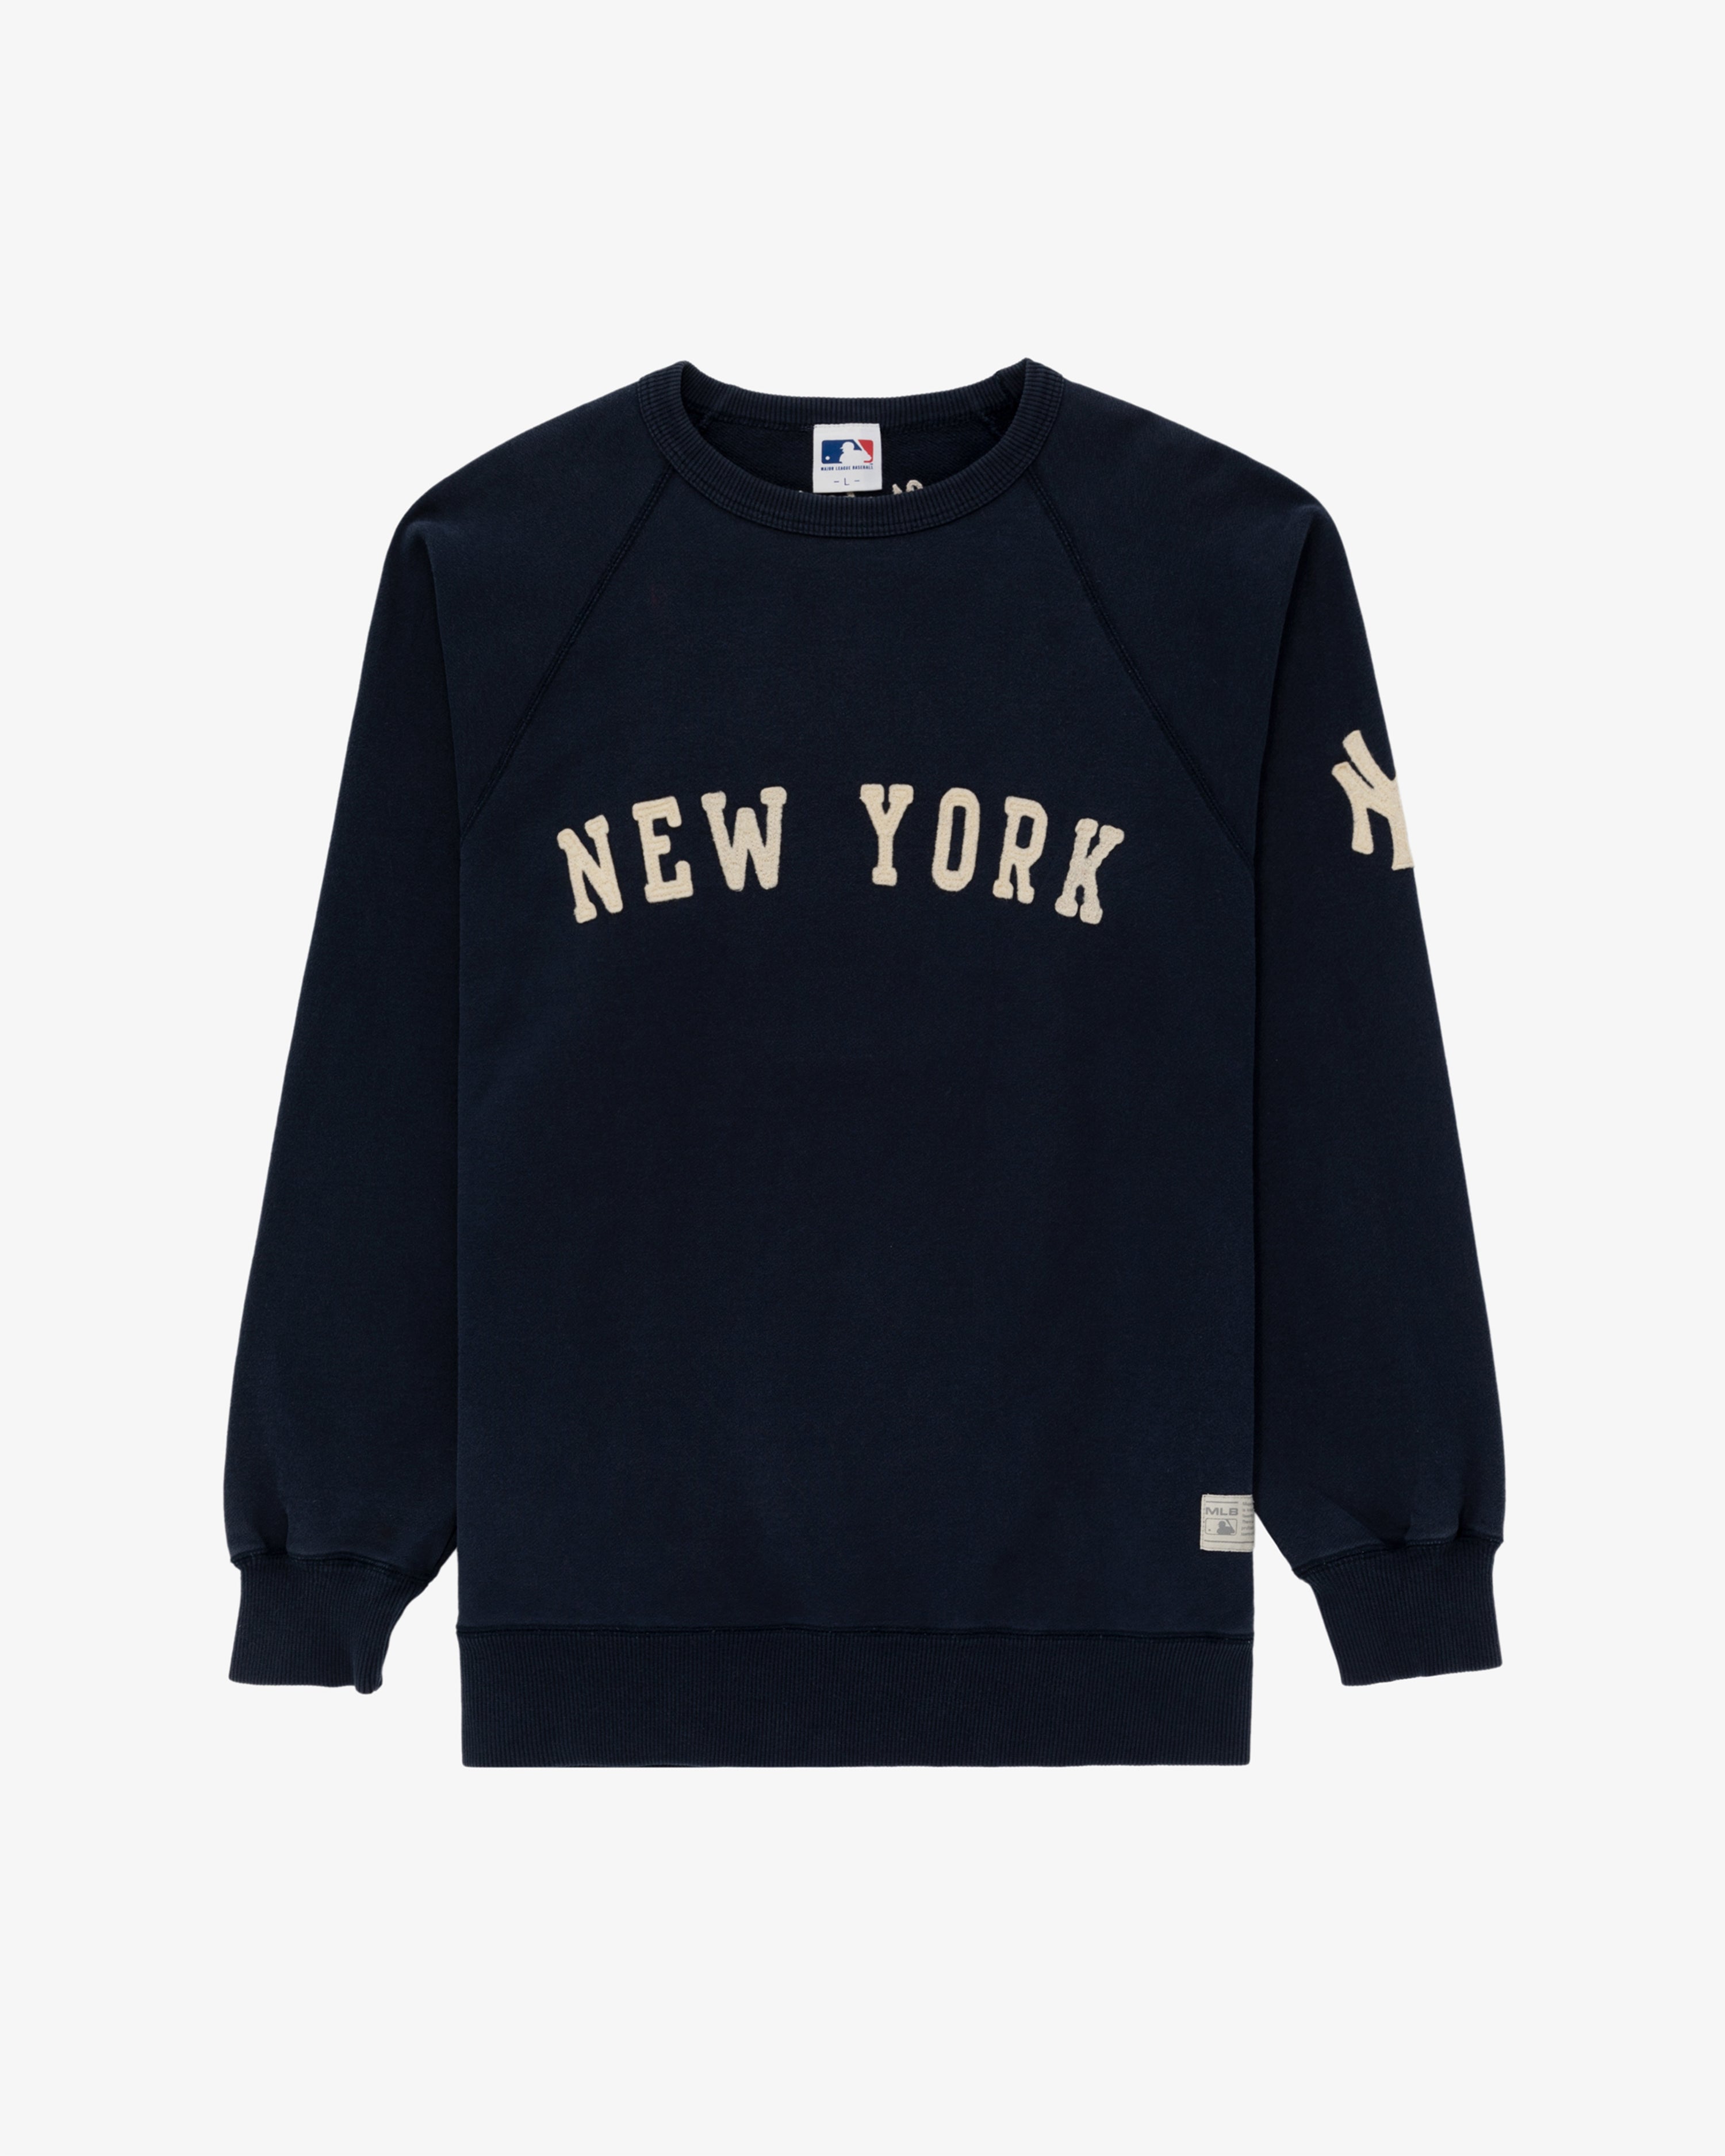 mlb new york yankees sweatshirt